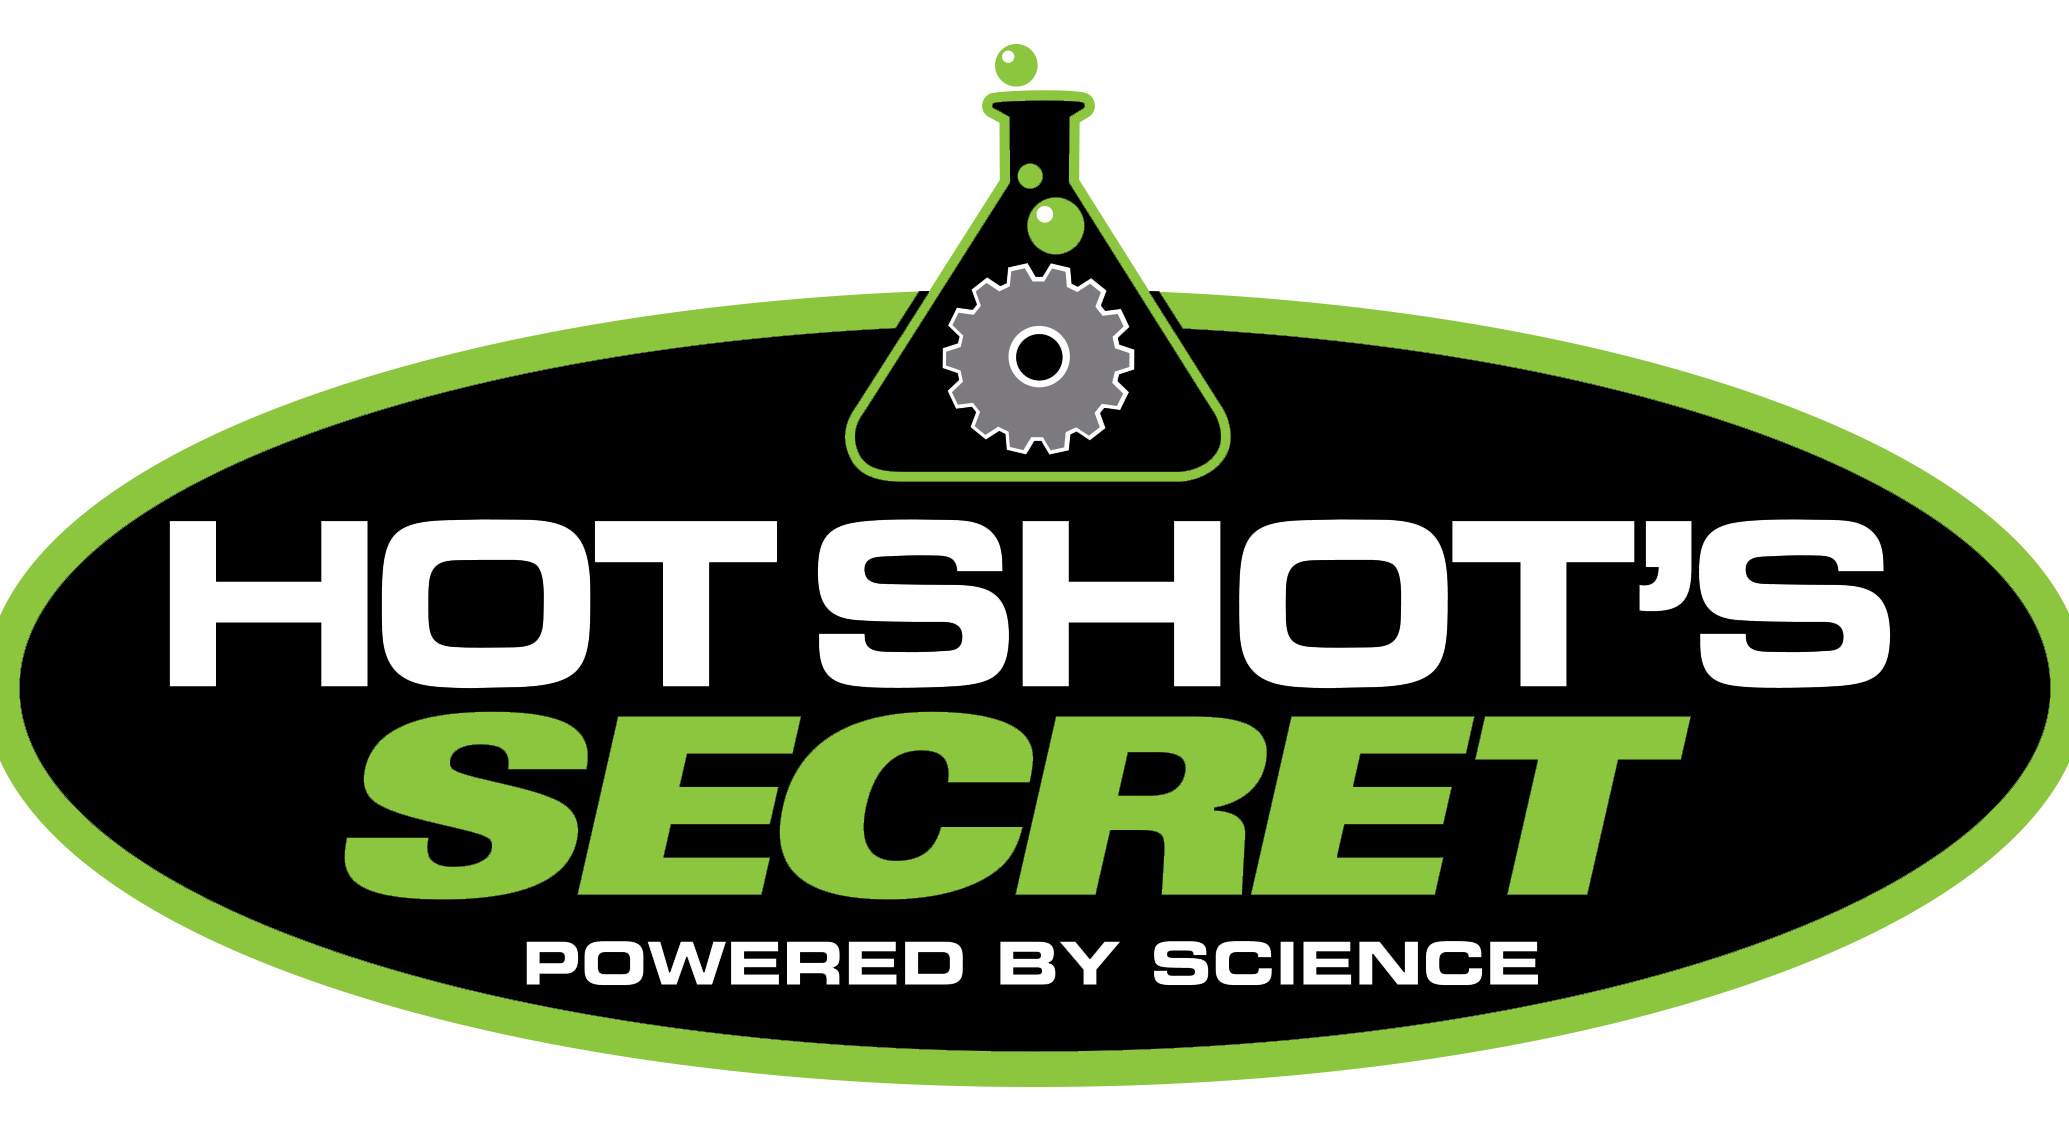 Hot Shot's logo